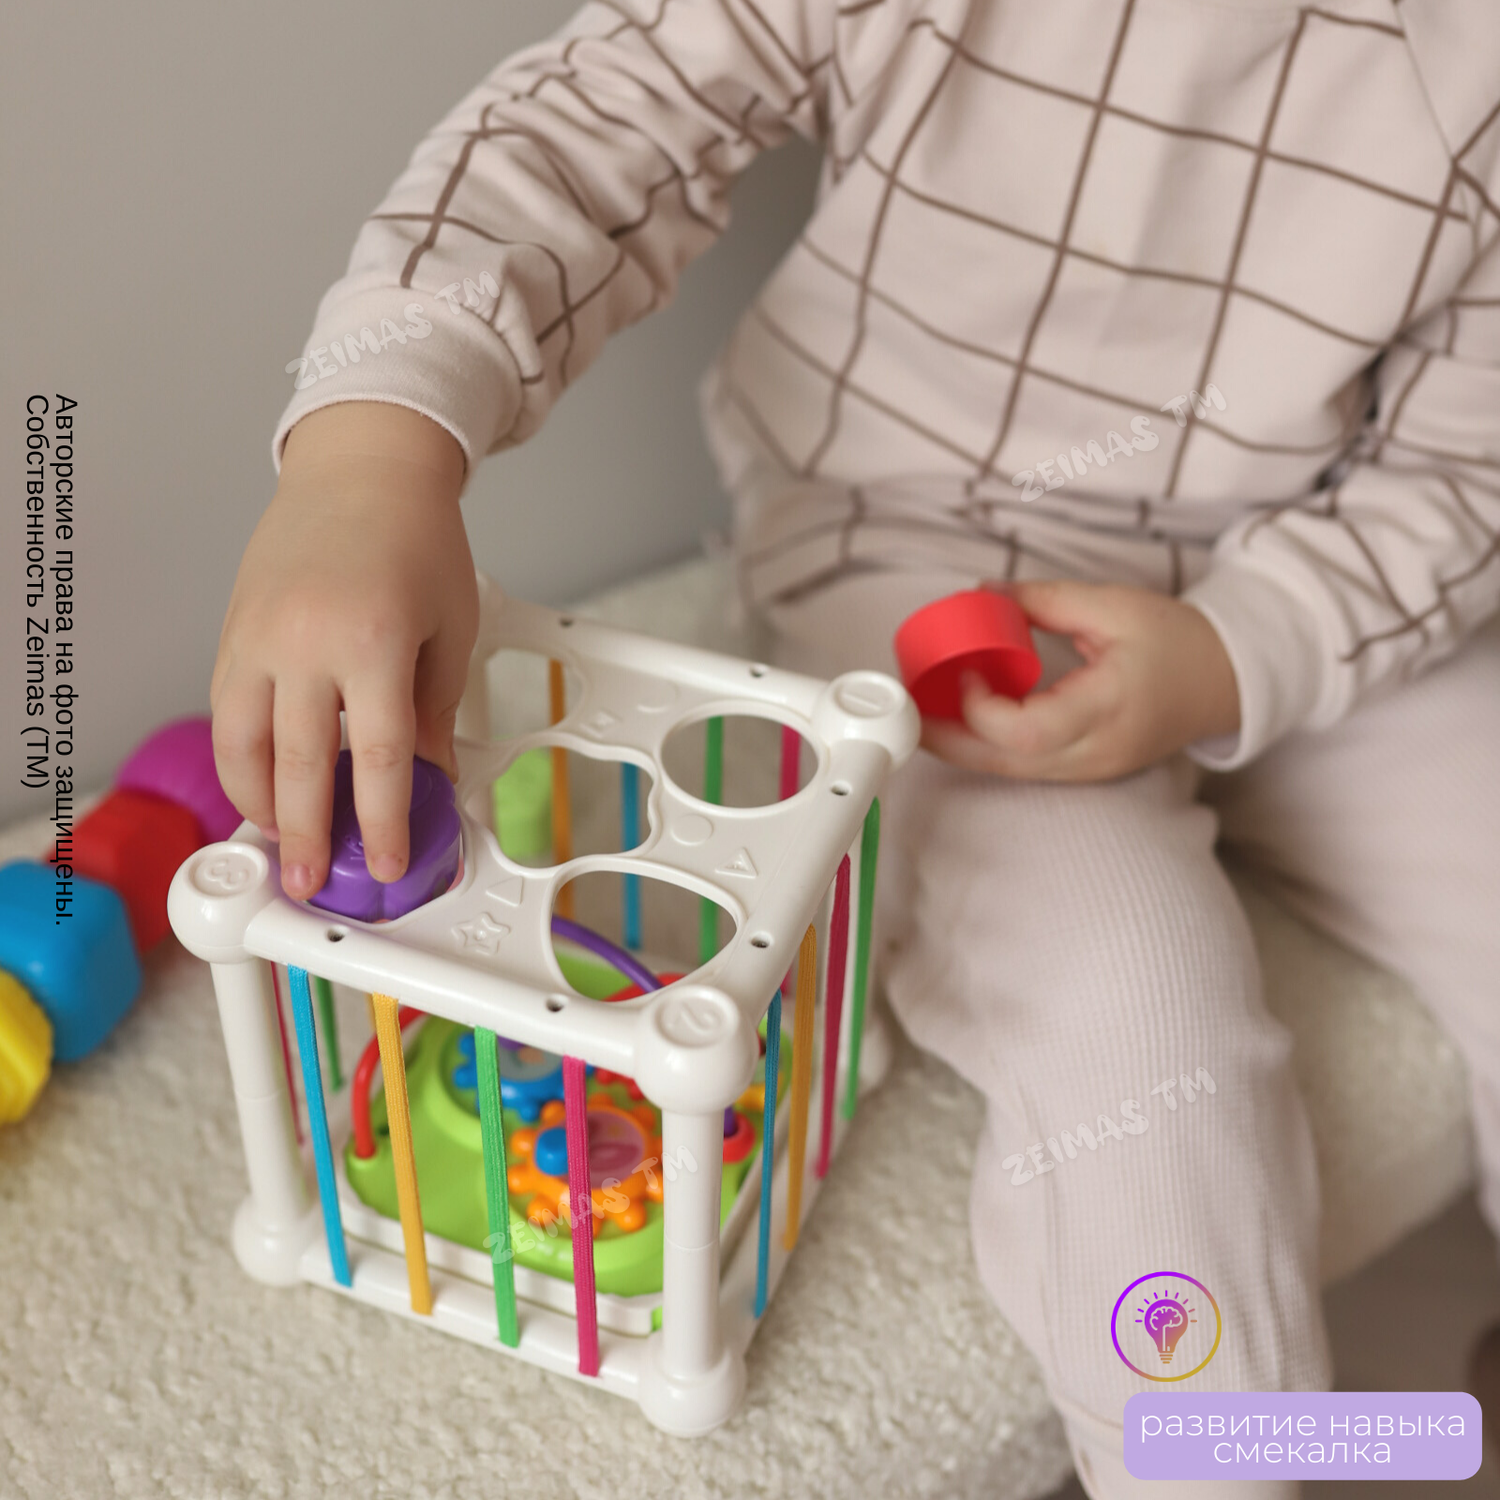 Сортер-куб Zeimas Монтессори 6 фигурок с погремушкой развивающая игрушка ксилофон - фото 4